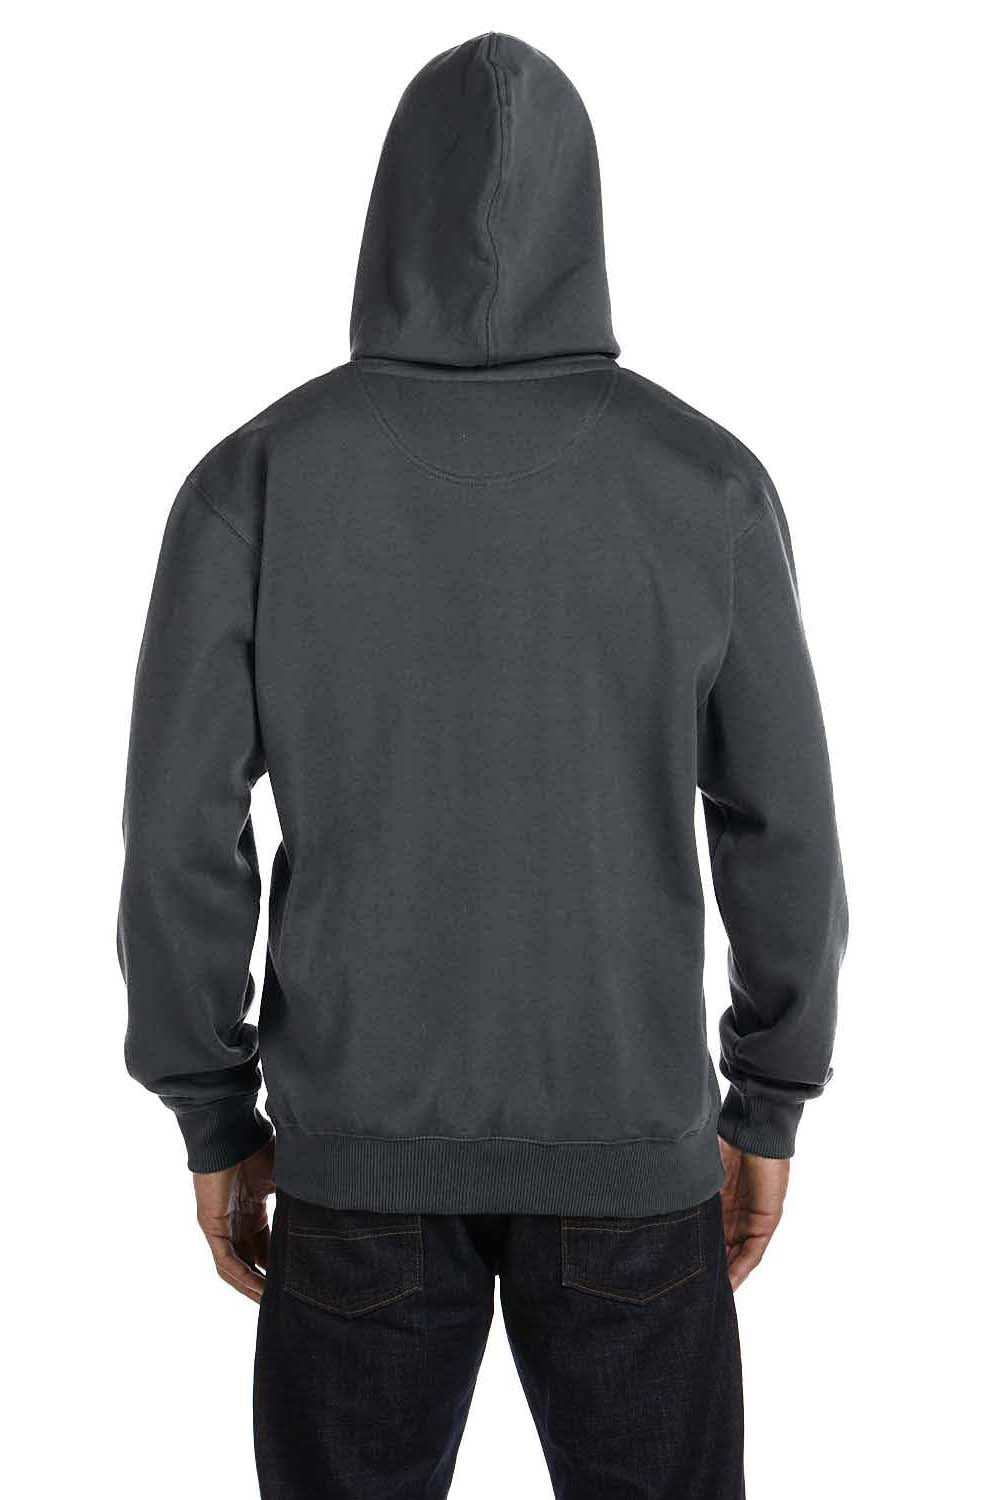 Econscious EC5500 Mens Hooded Sweatshirt Hoodie Charcoal Grey Back